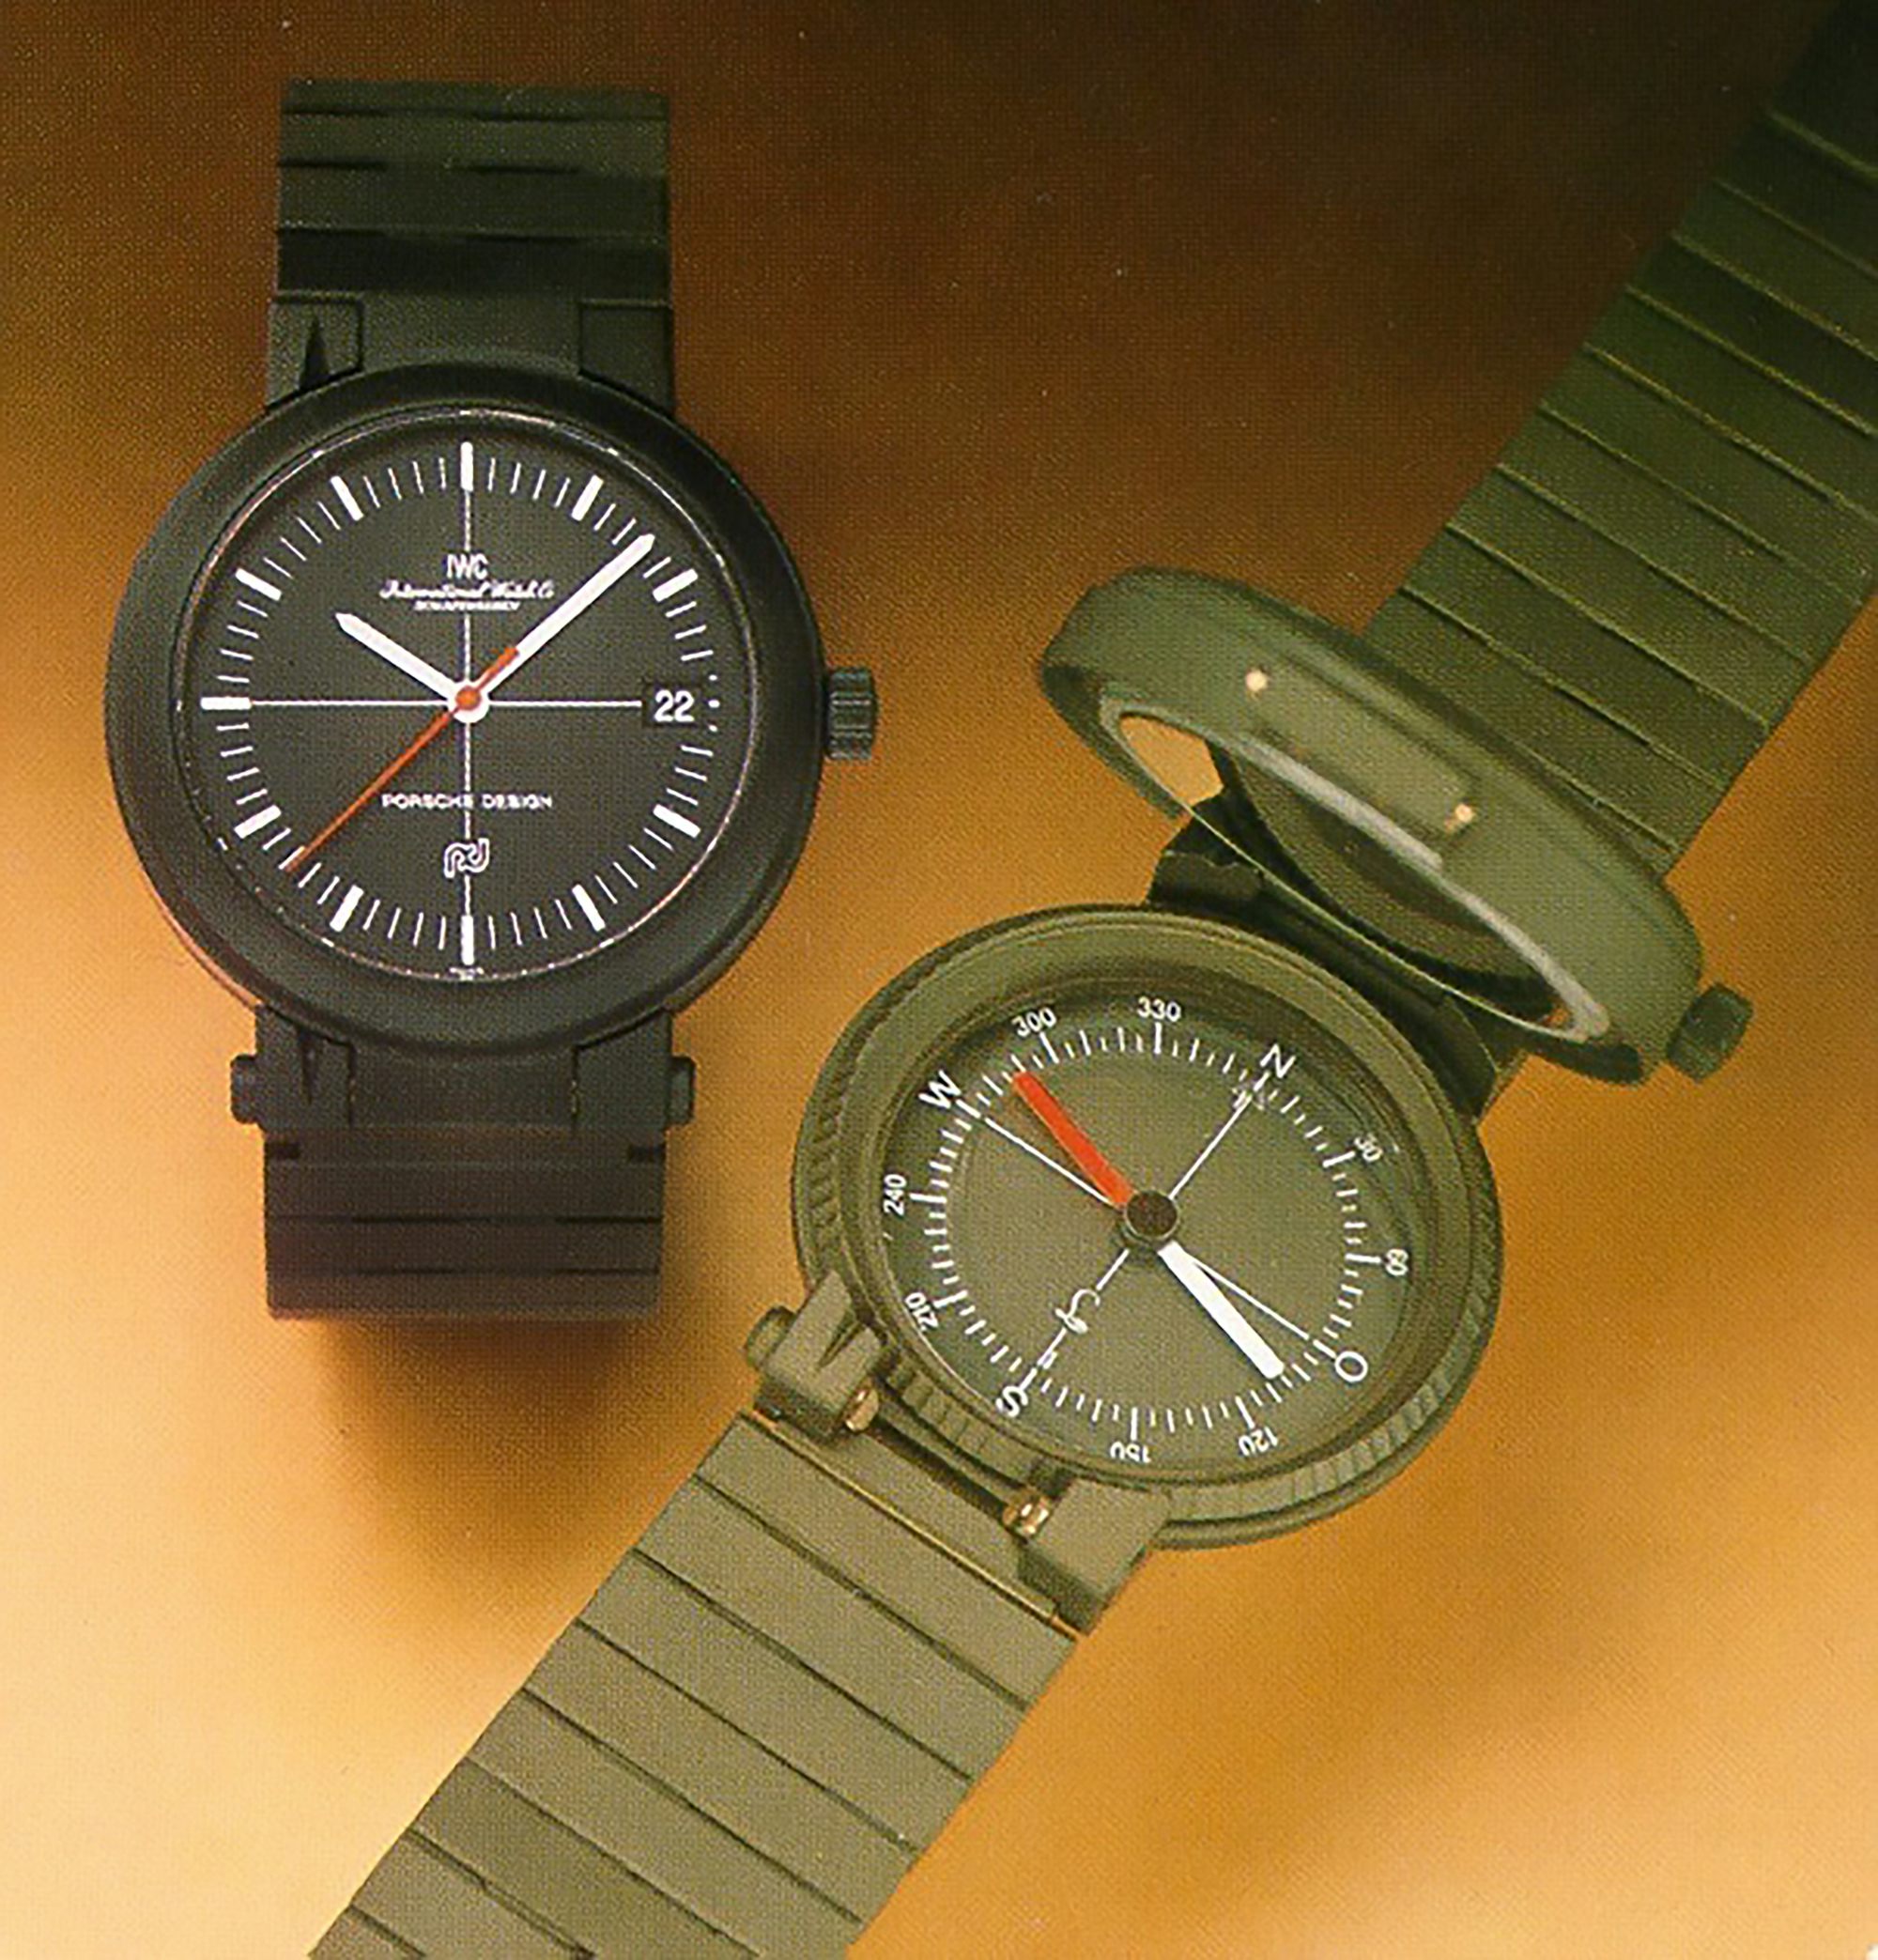 IWC Porsche Compass Watch